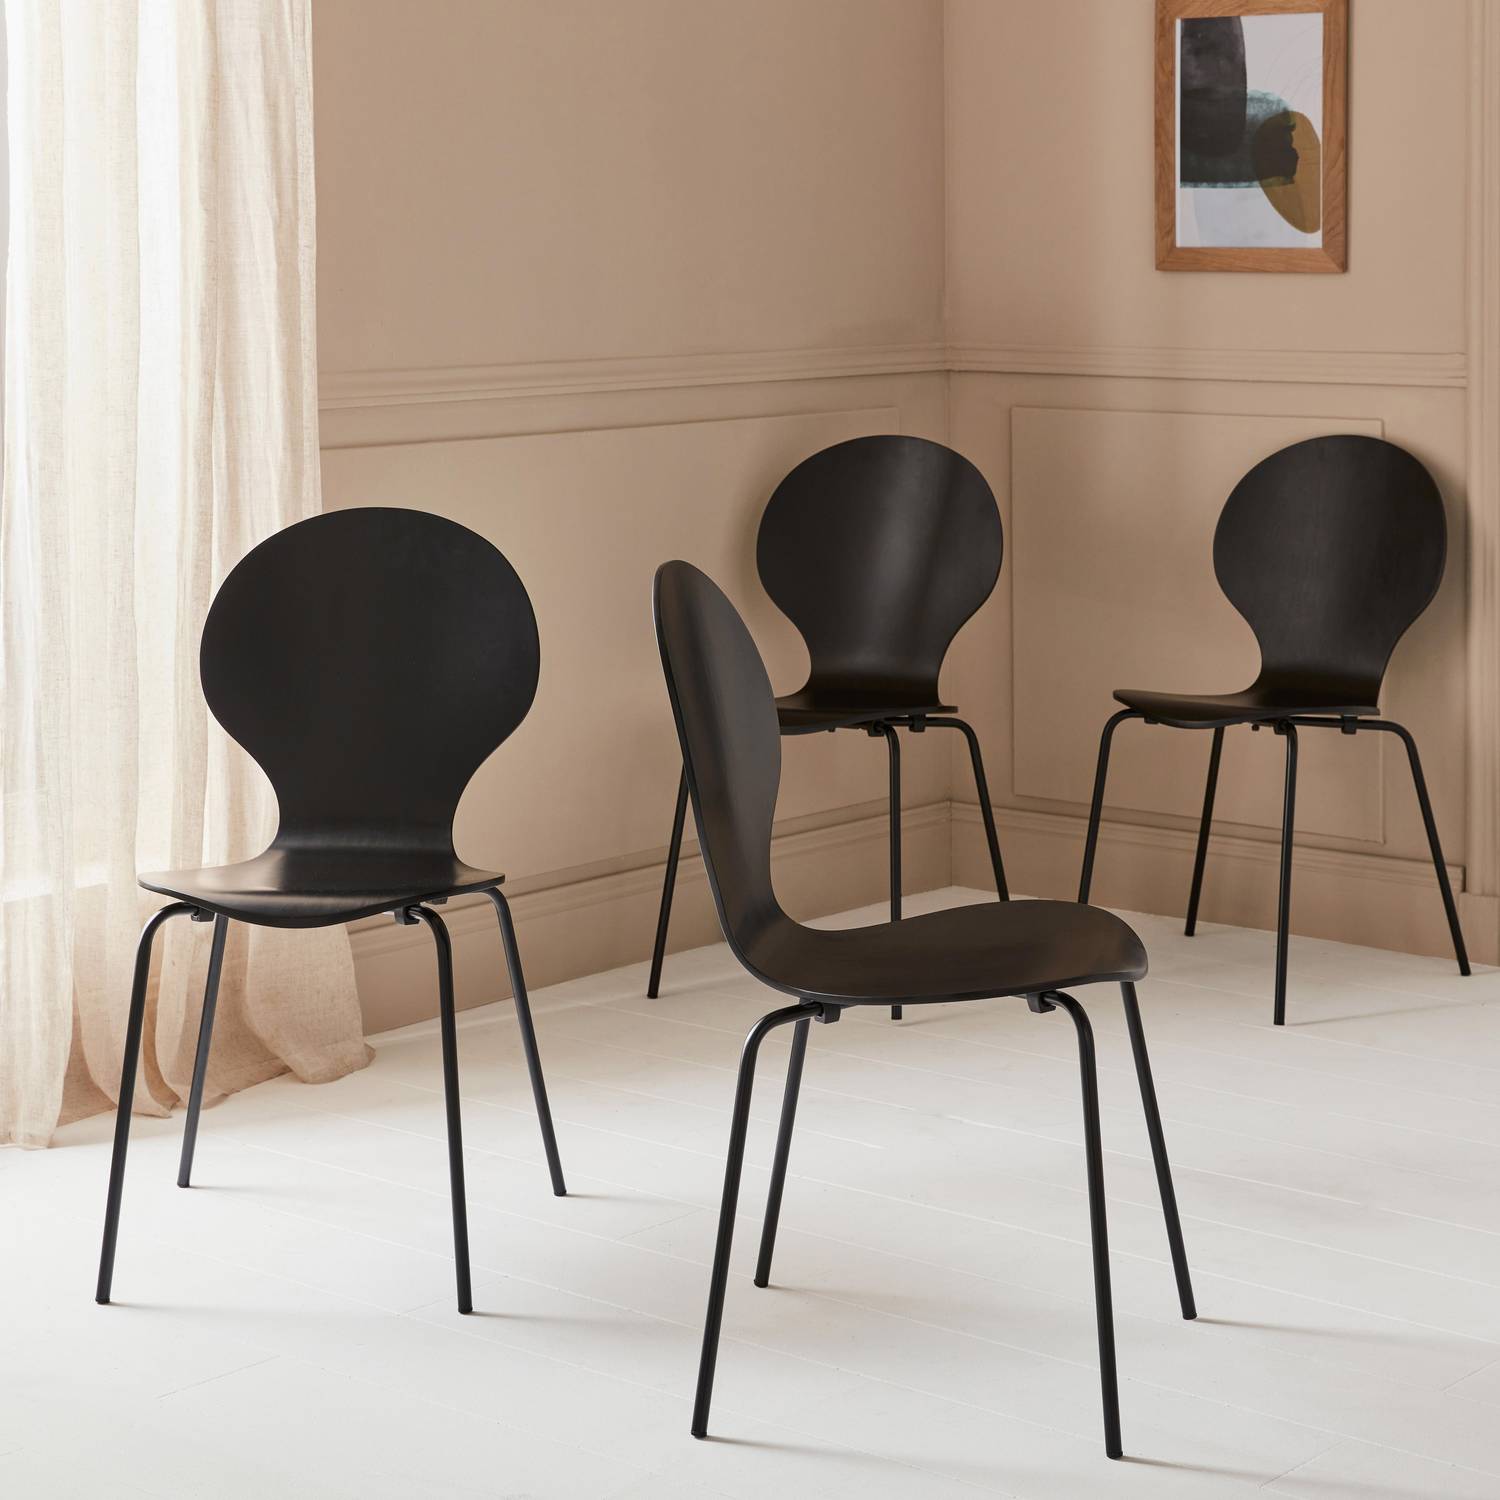 Set di 4 sedie nere retro impilabili, legno di hevea e compensato, gambe in acciaio, Naomi, L 43 x P 48 x H 87cm Photo1